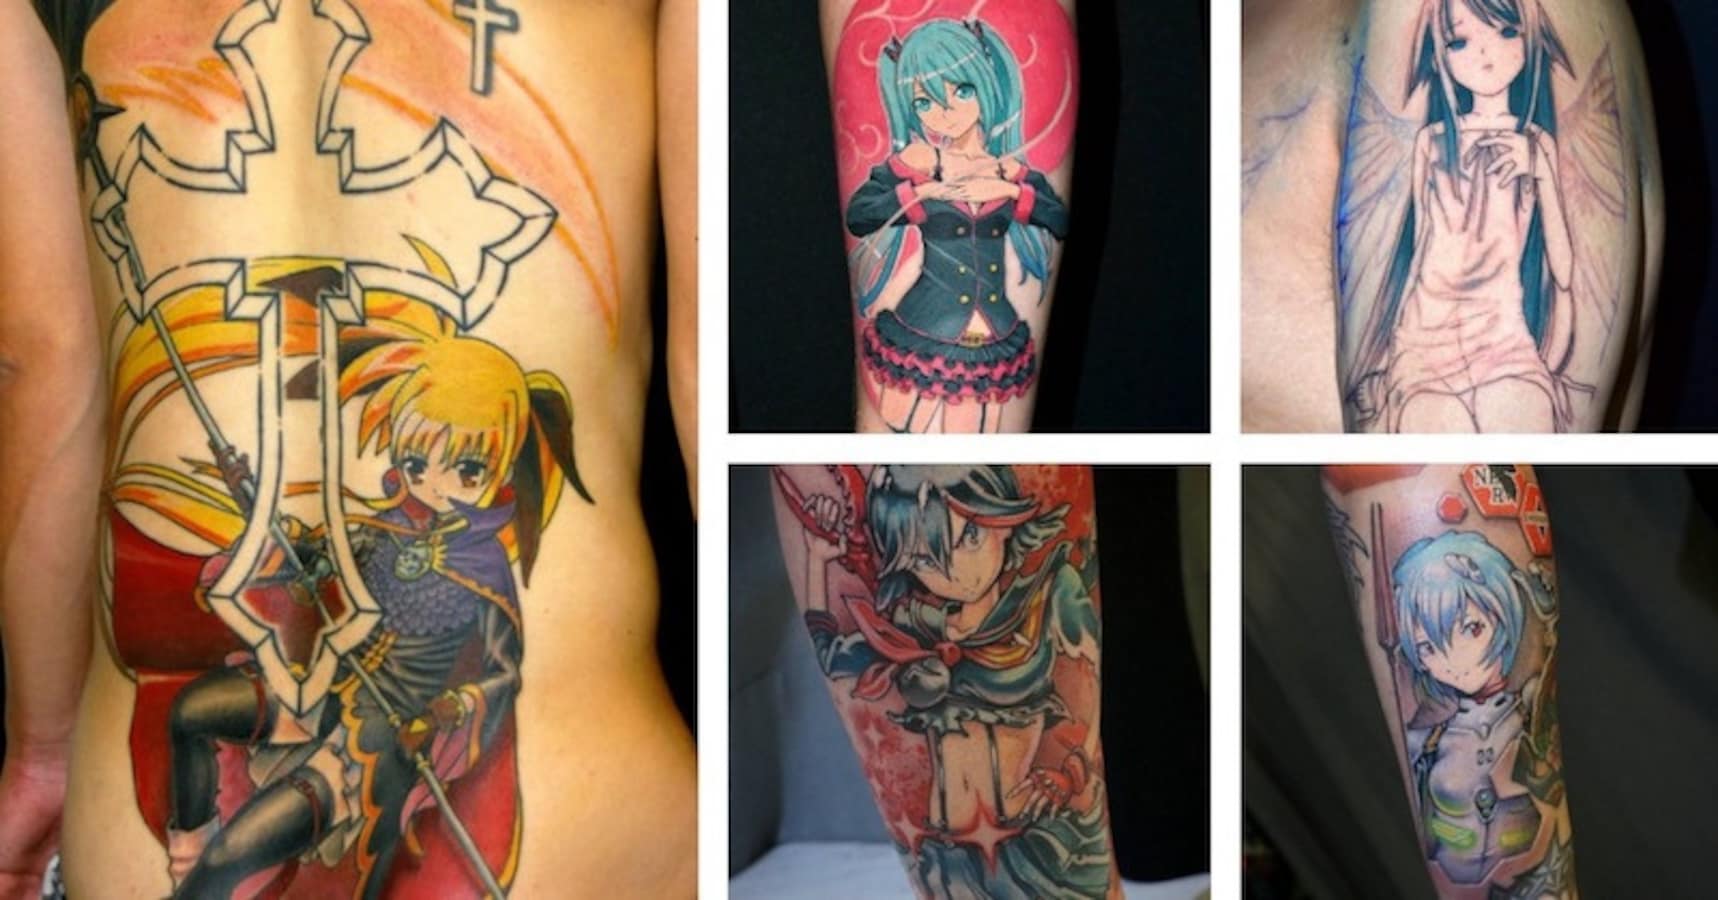 Fatestay night FateZero Saber Shirou Emiya FateExtra seals PNG  Fate  stay night Fate tattoo Cool symbols